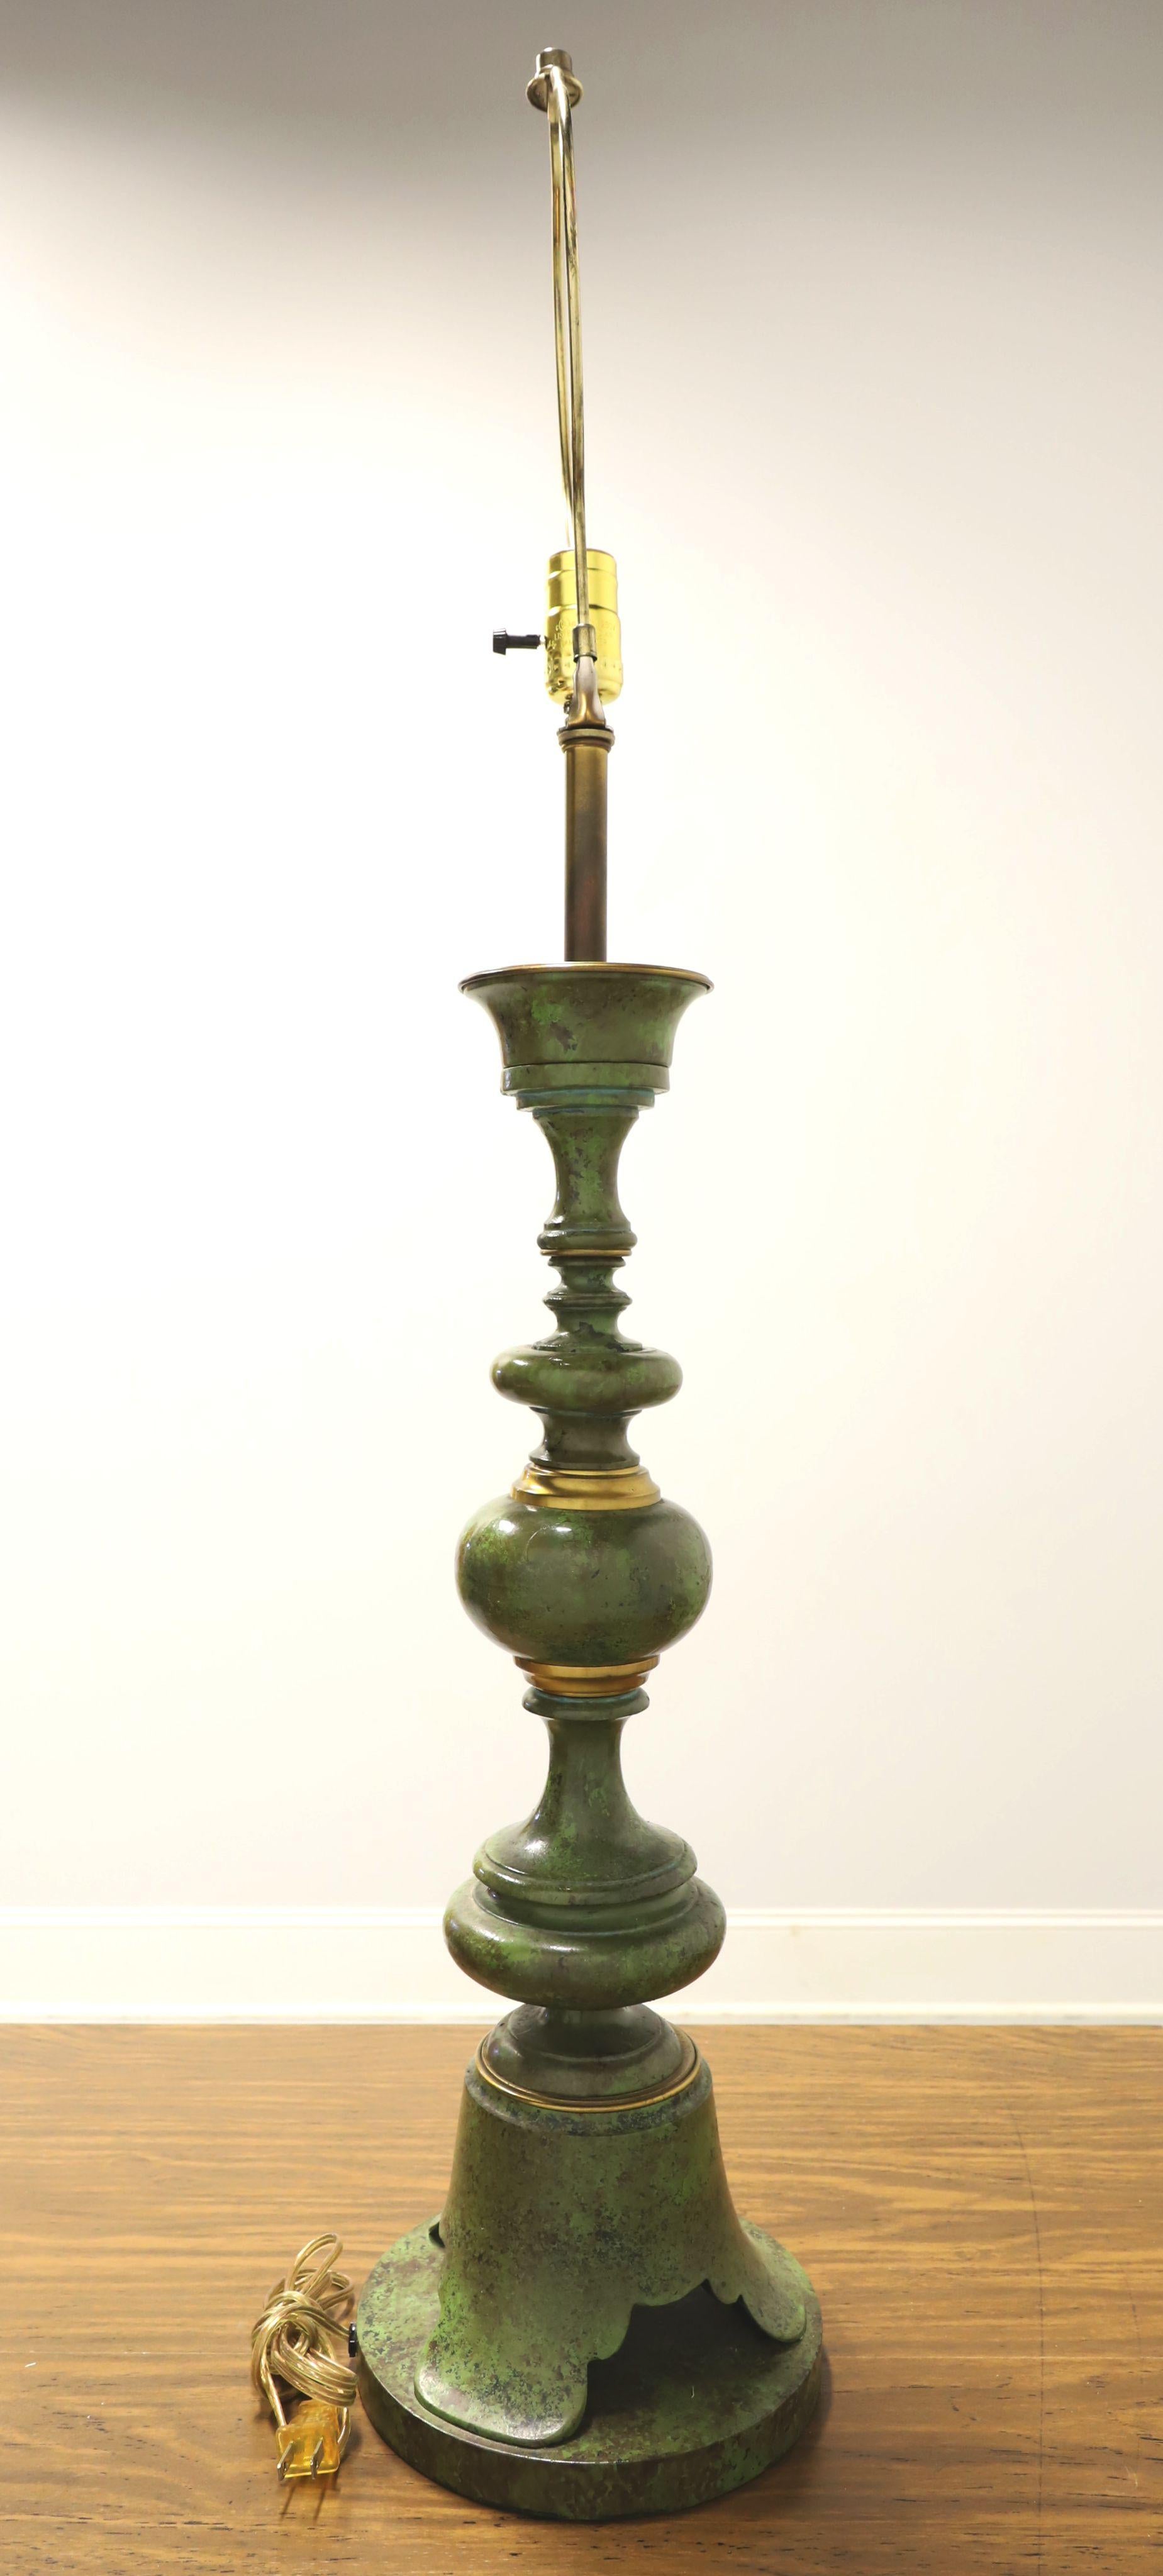 Une très grande lampe de table de style Hollywood Regency, sans marque. Métal solide peint dans un design marbré vert et noir avec des accents d'anneaux dorés et une base en forme de cloche. Douille à une ampoule standard avec interrupteur rotatif